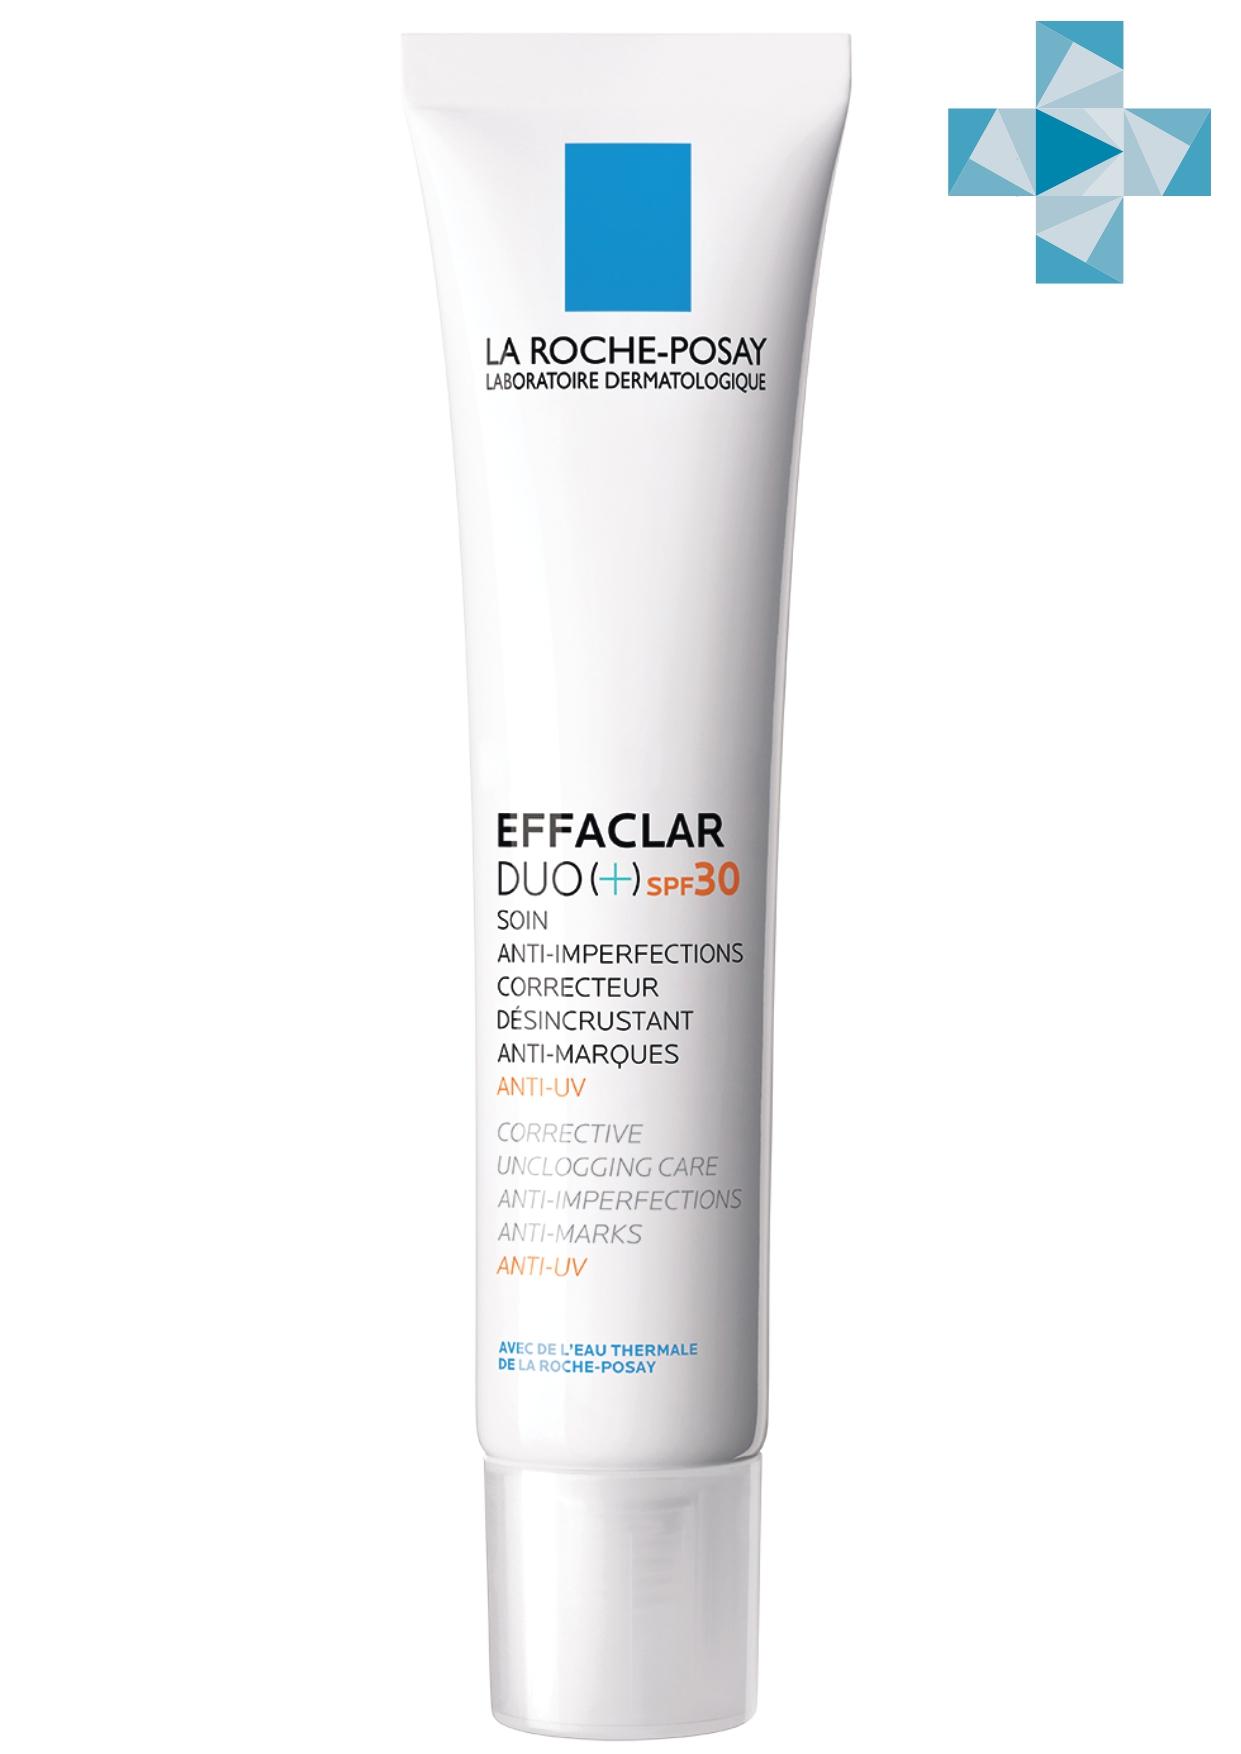 Купить La Roche-Posay Корректирующий крем-гель для проблемной кожи Duo+ SPF30, 40 мл (La Roche-Posay, Effaclar), Франция